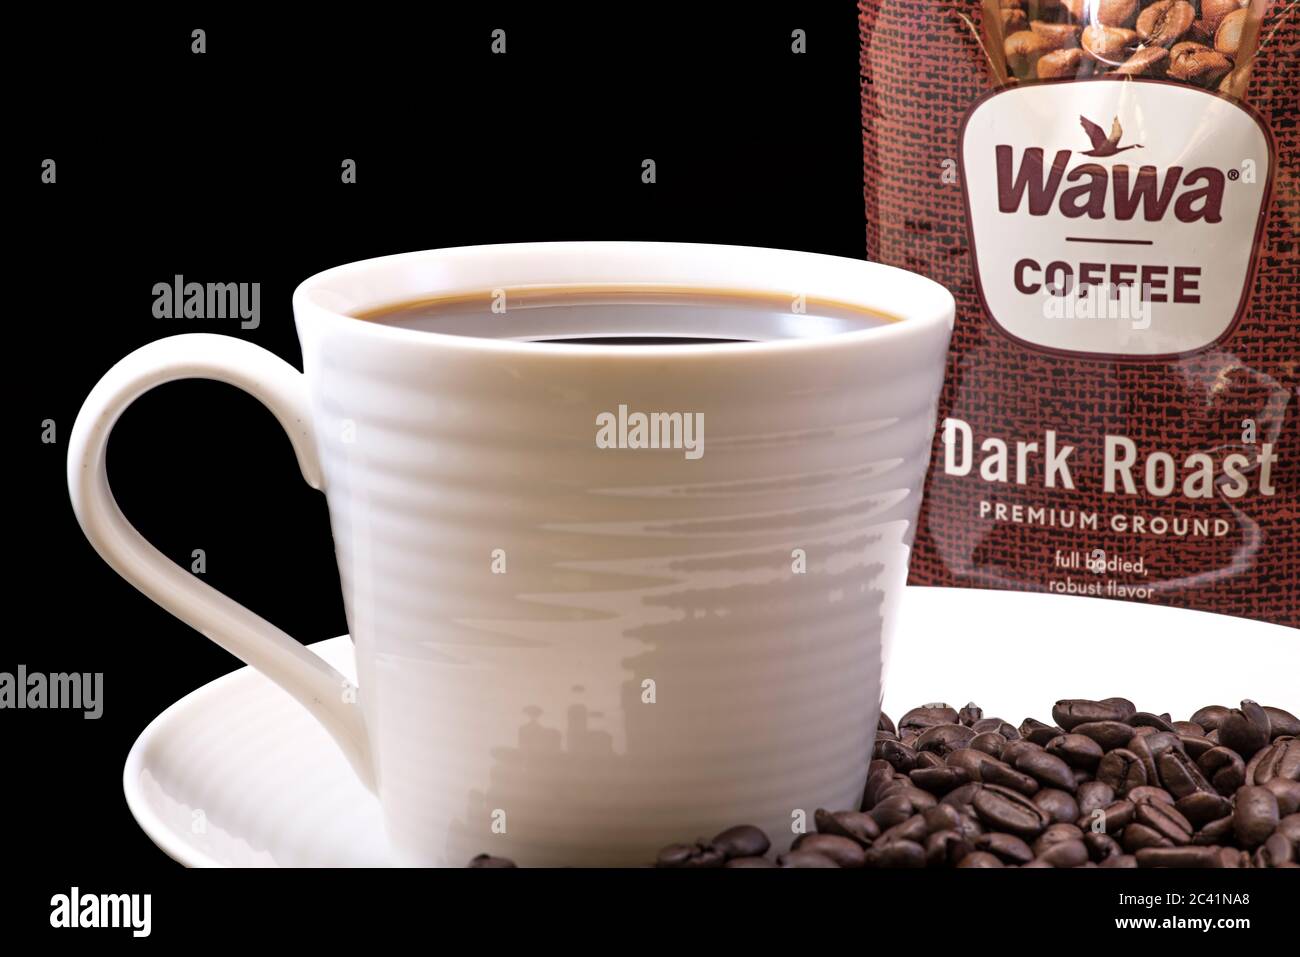 Wawa dunkel gebratene Kaffeetasche Nahaufnahme mit einer gebrauten Tasse Wawa Kaffee weißen Tasse auf einem weißen Teller, Kaffeebohnen und einem festen schwarzen Hintergrund für Ausschnitte Stockfoto